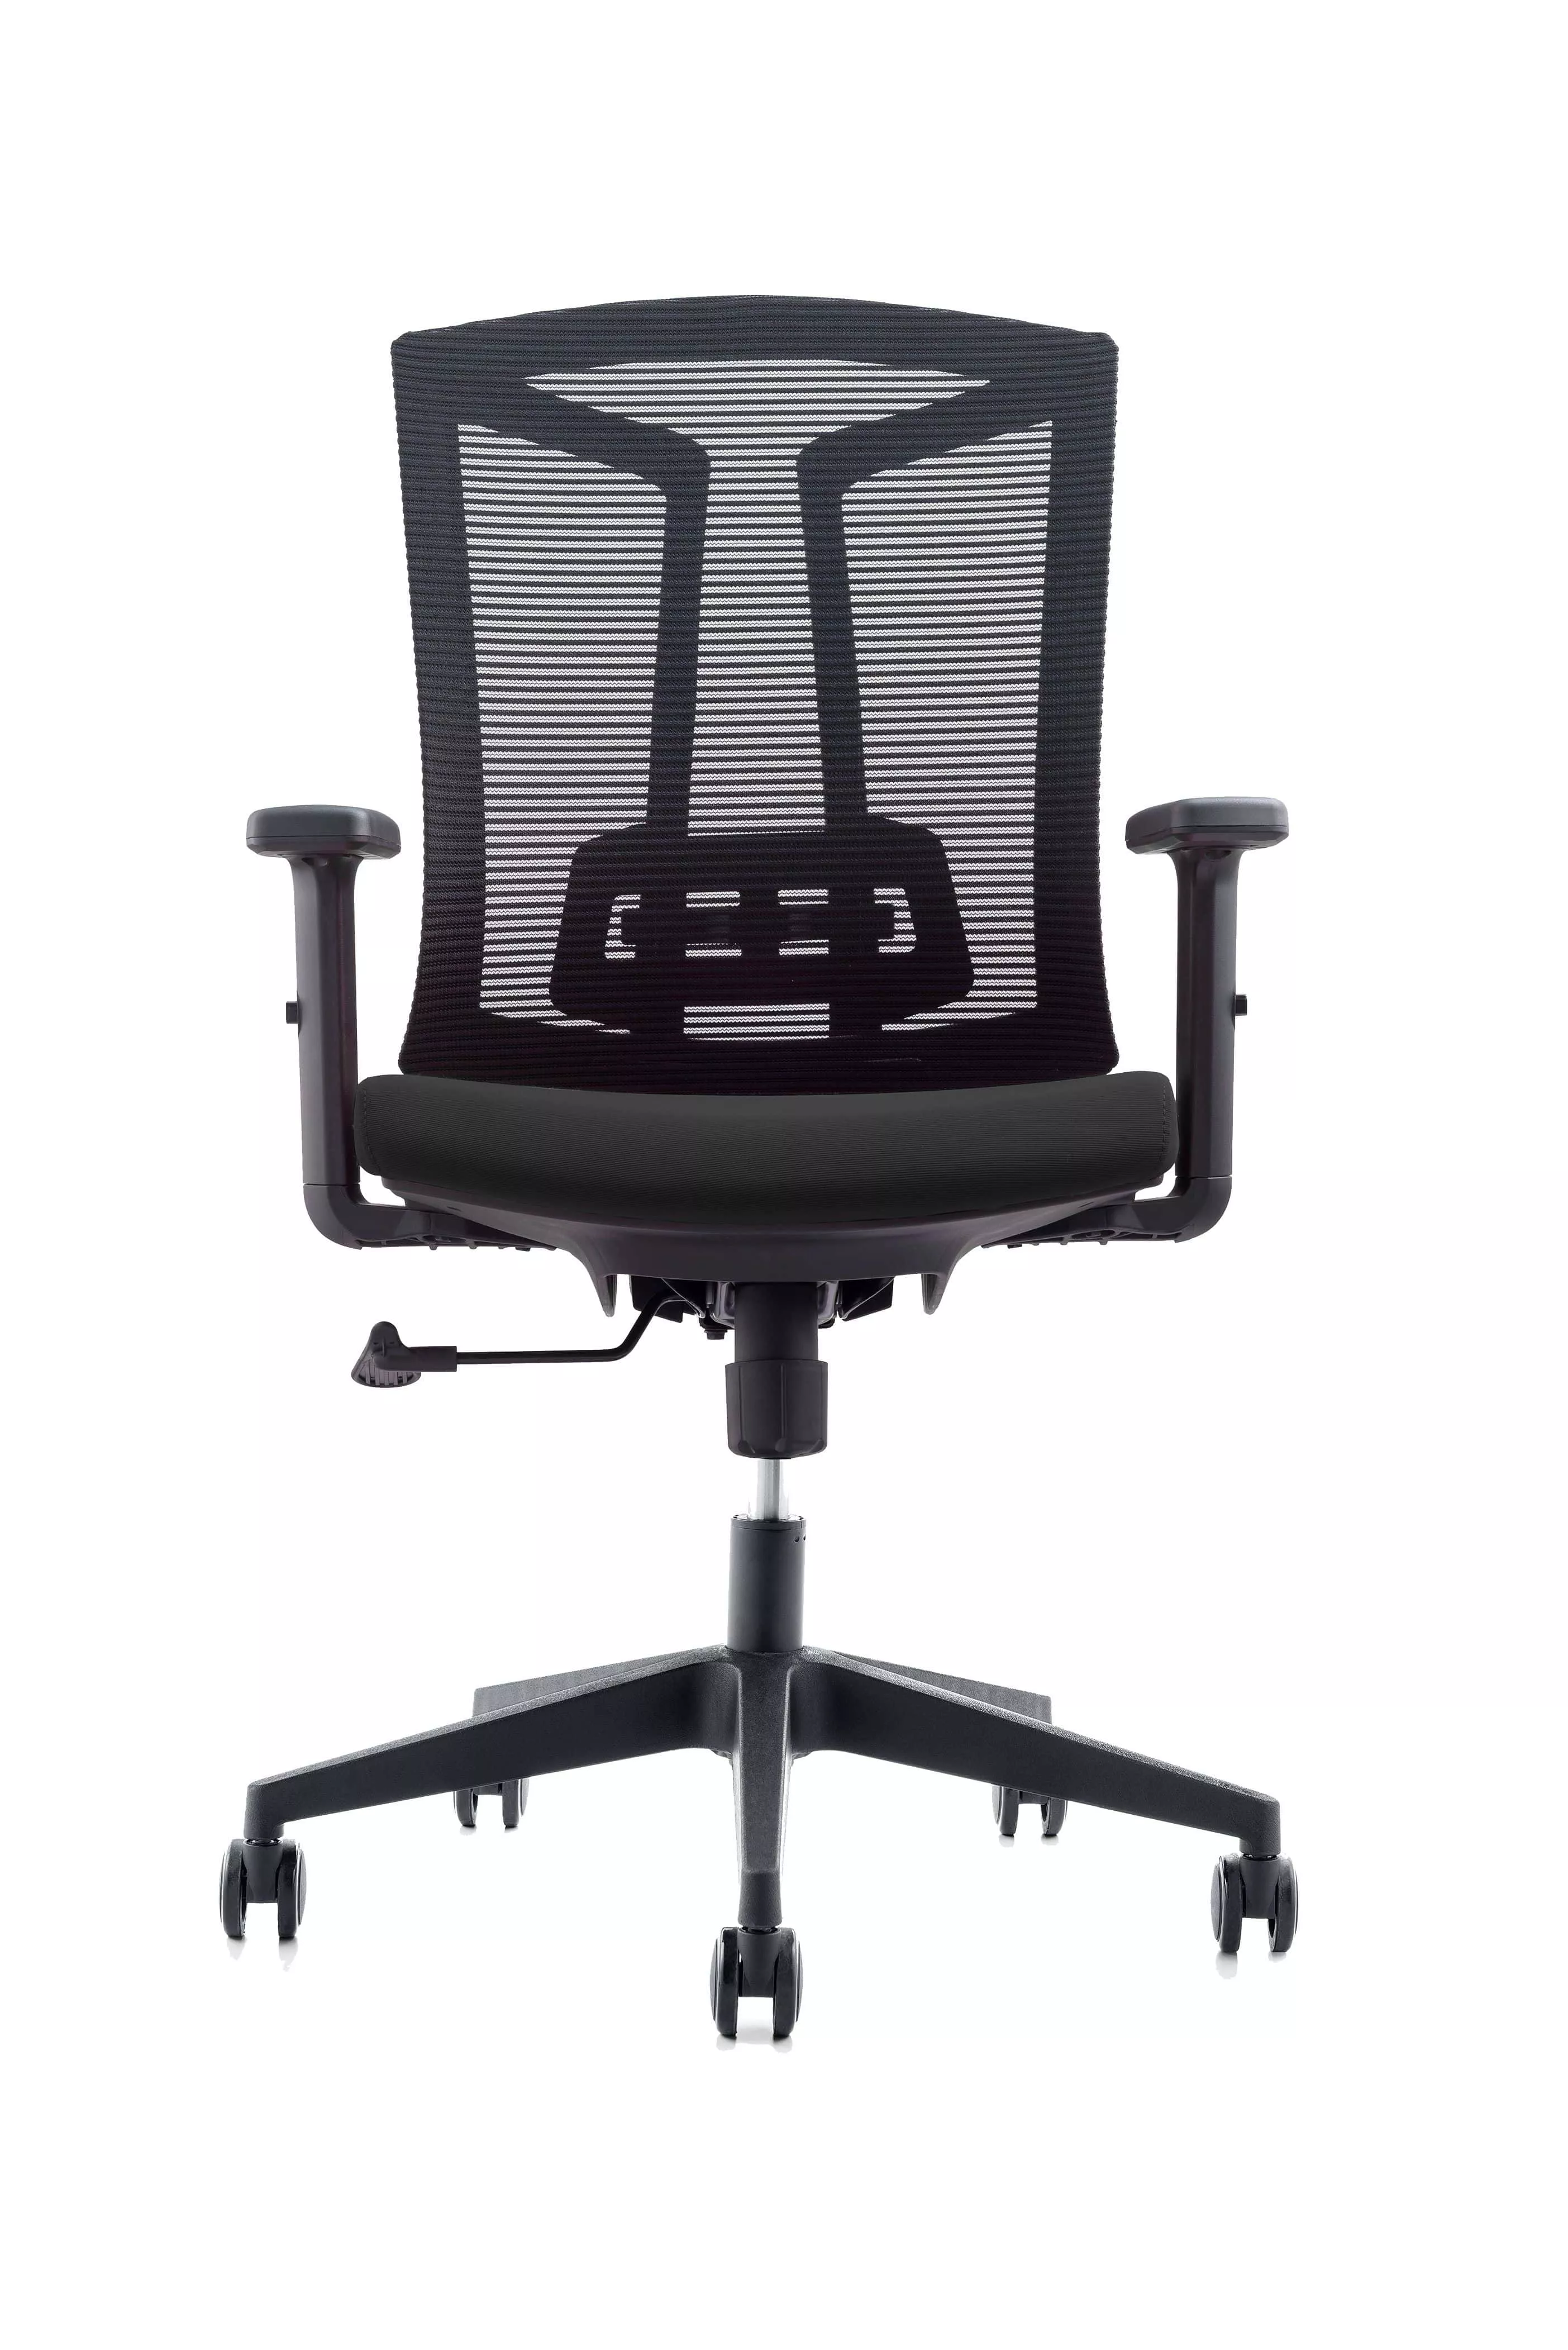 Эргономичное кресло College CLG-425 MBN-B Черный